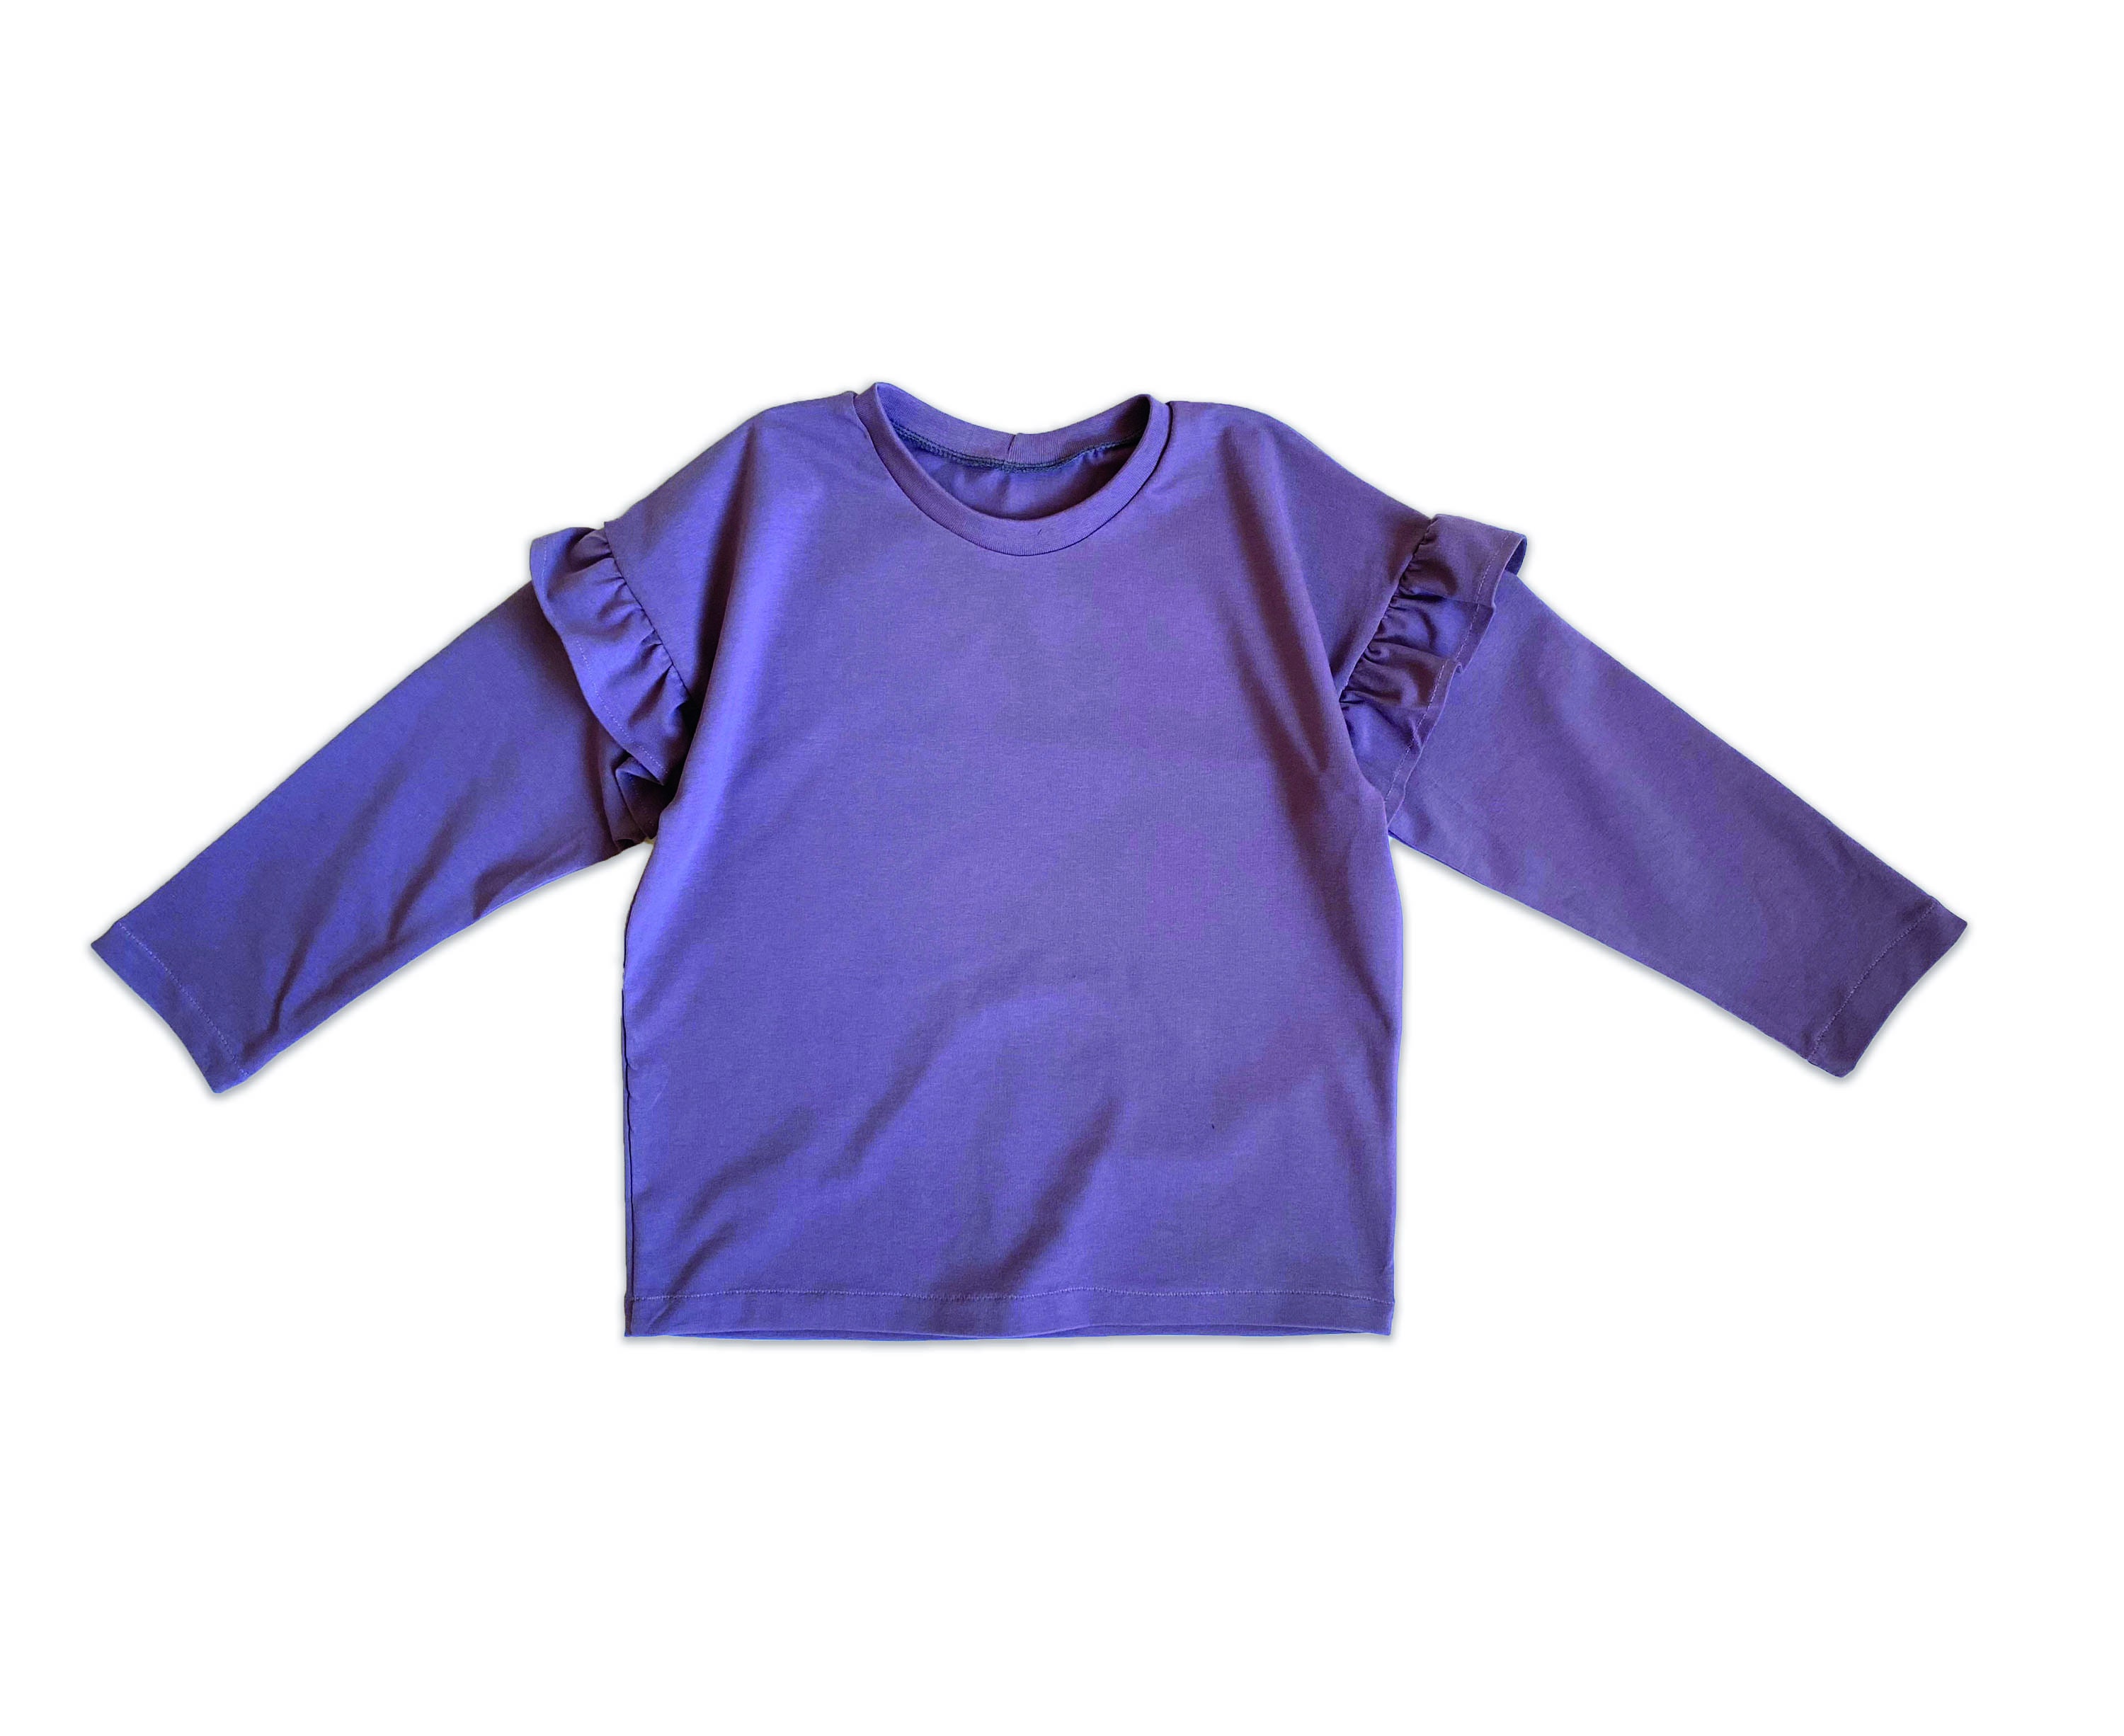 Boxy Tee Pattern, Baby T-shirt Pattern Toddler Oversized T-shirt Sewing  Pattern, Pocket T-shirt Patter, Ruffle Sleeve Digital Sewing Pattern - Etsy | T-Shirts